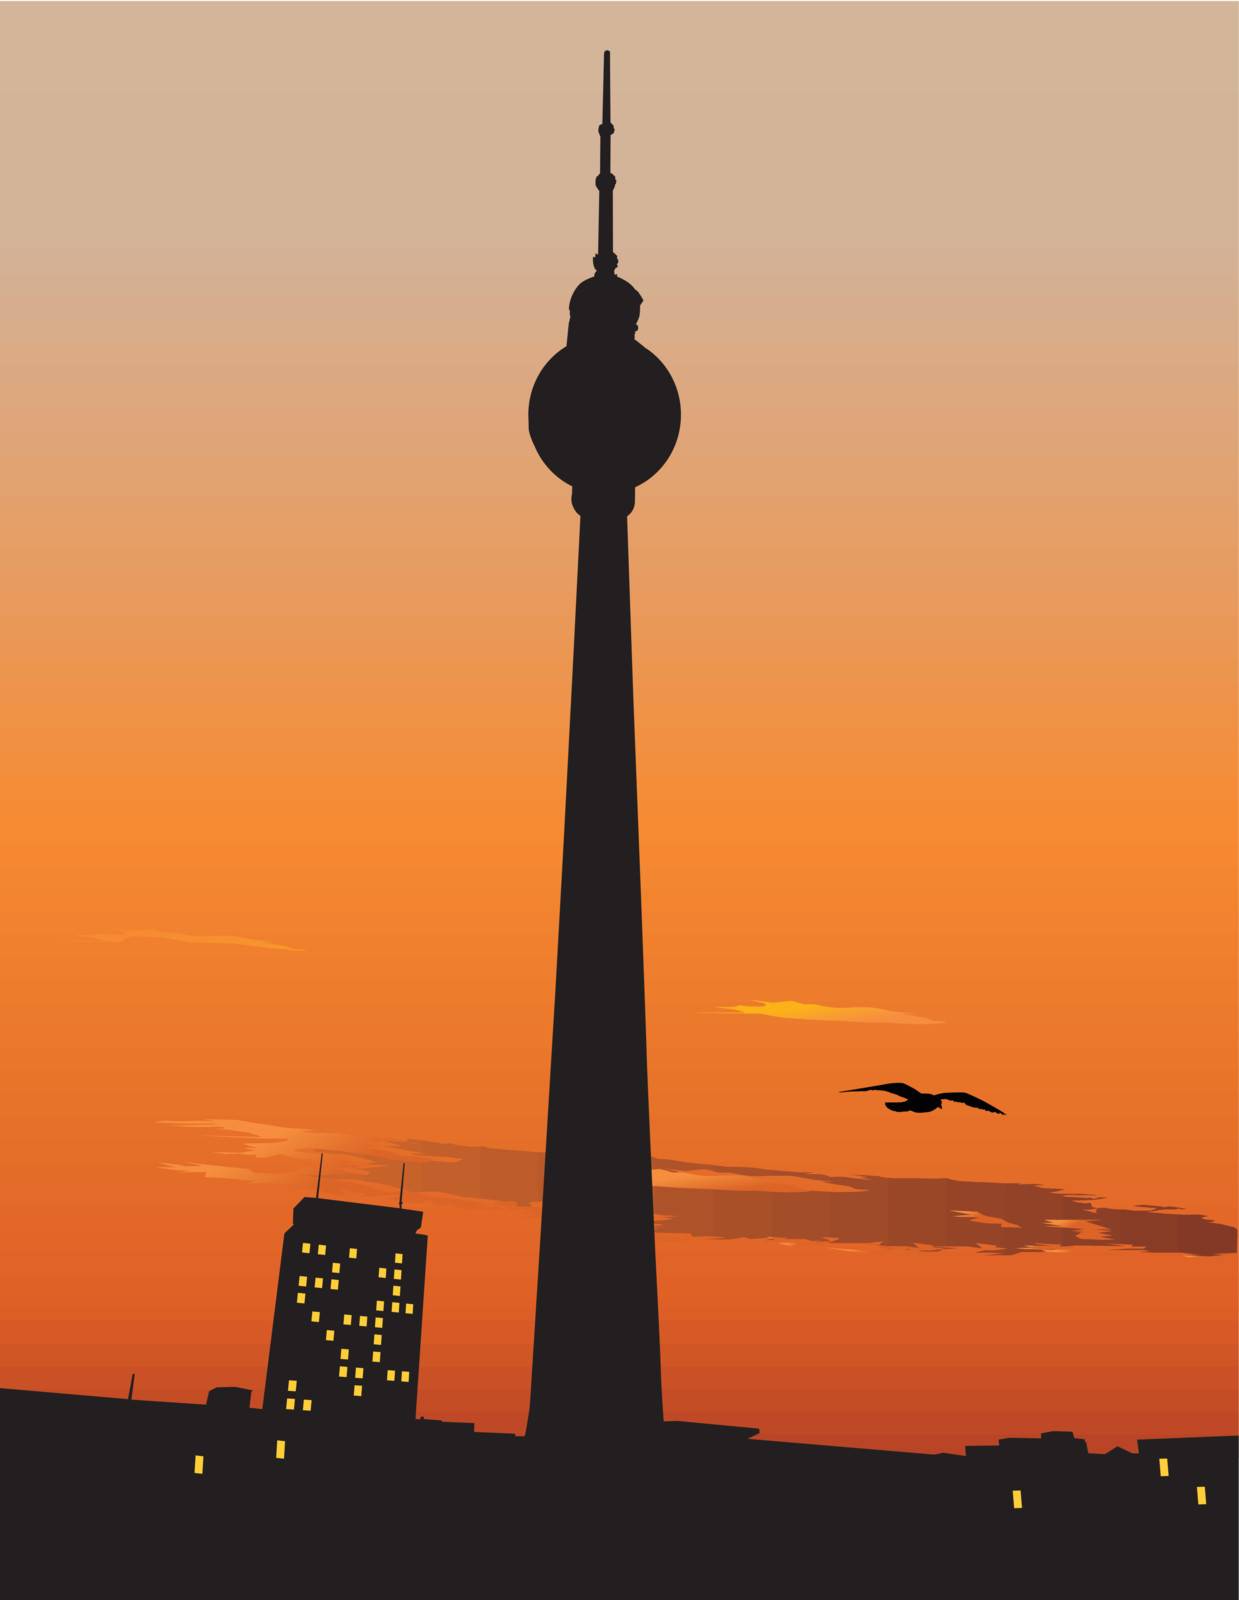 Berlin TV tower agaist sunset sky by ints